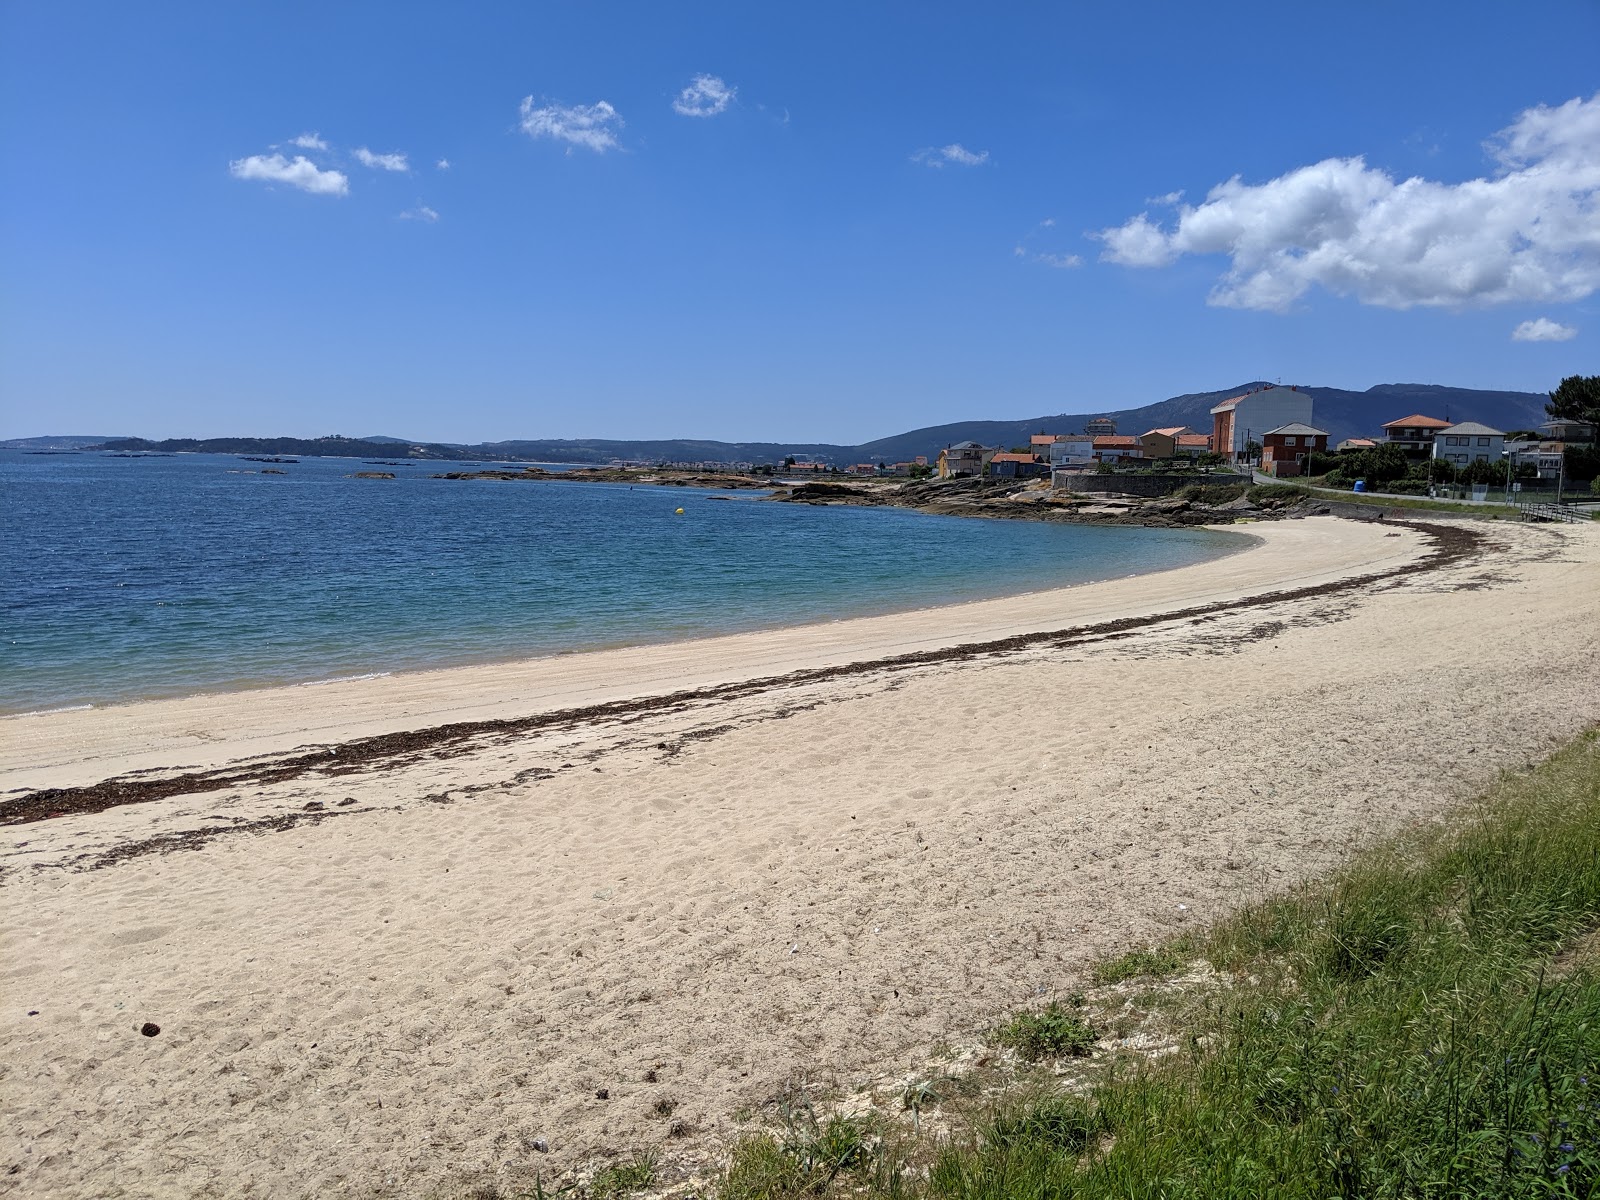 Fotografie cu Carragueiros beach zonele de facilități